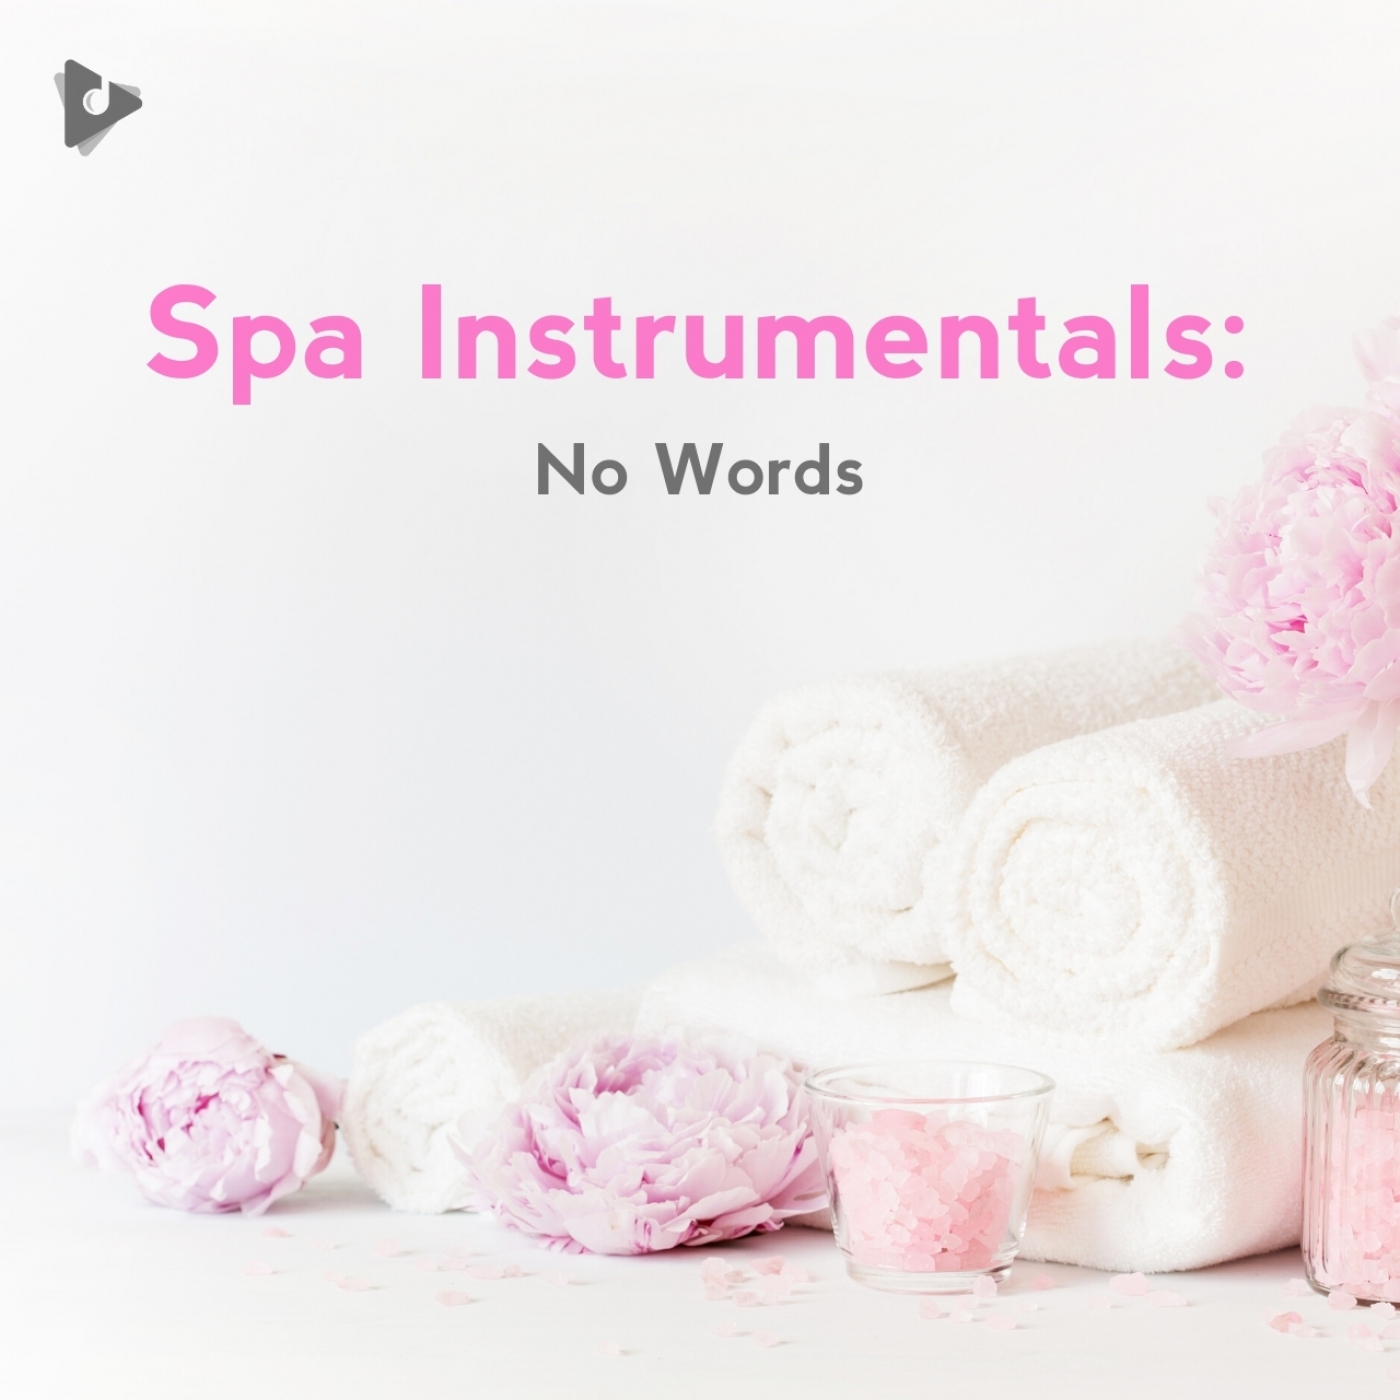 Spa Instrumentals: No Words